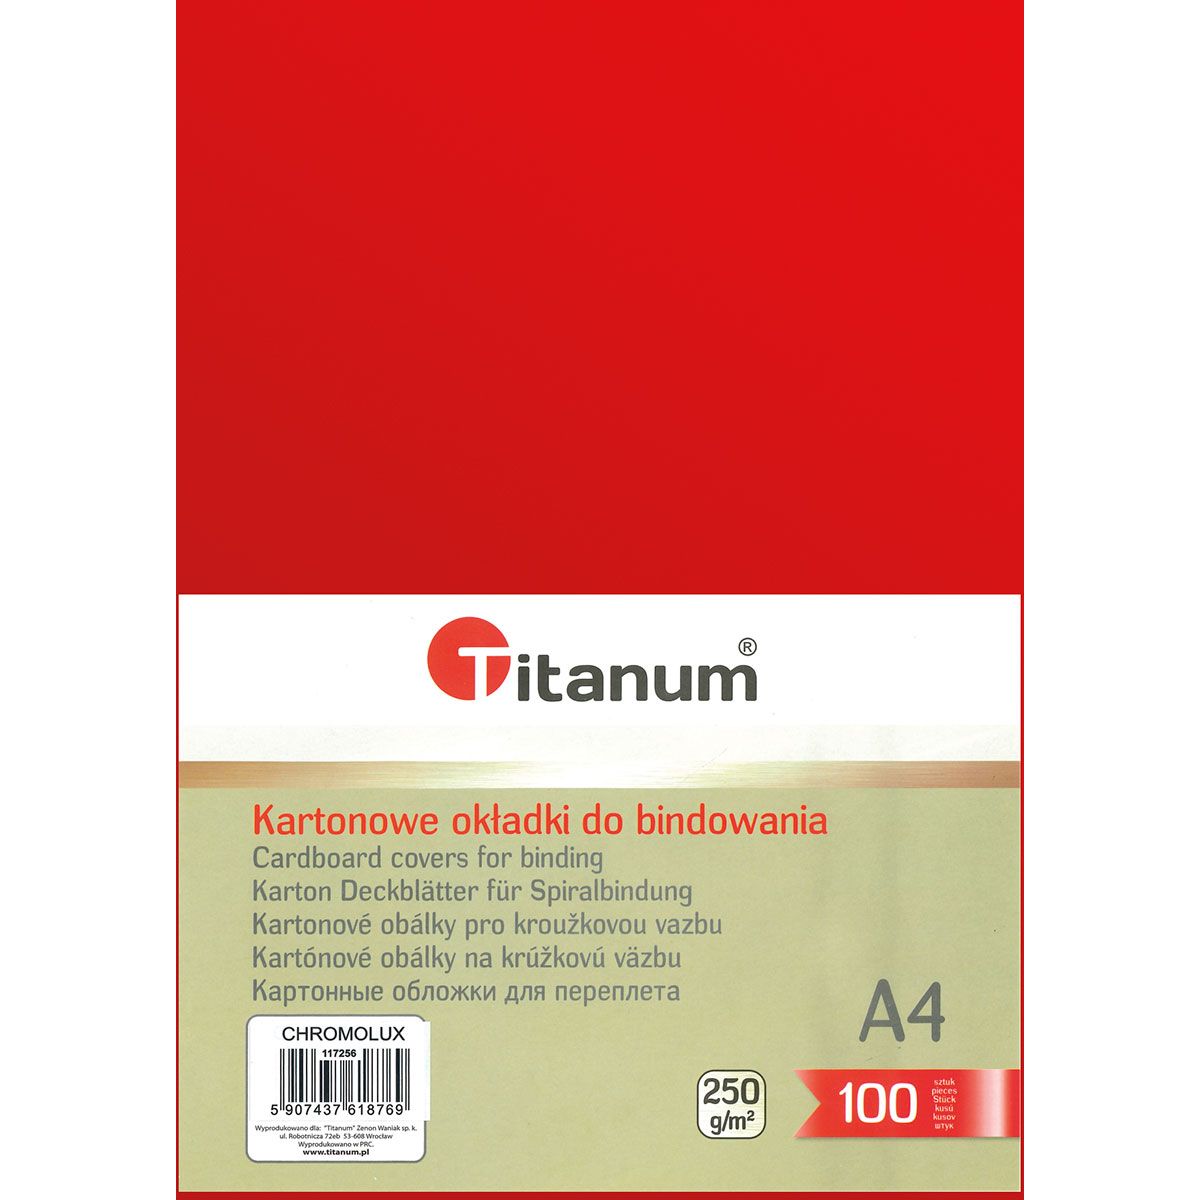 Karton do bindowania błyszczący - chromolux A4 czerwony 250g Titanum